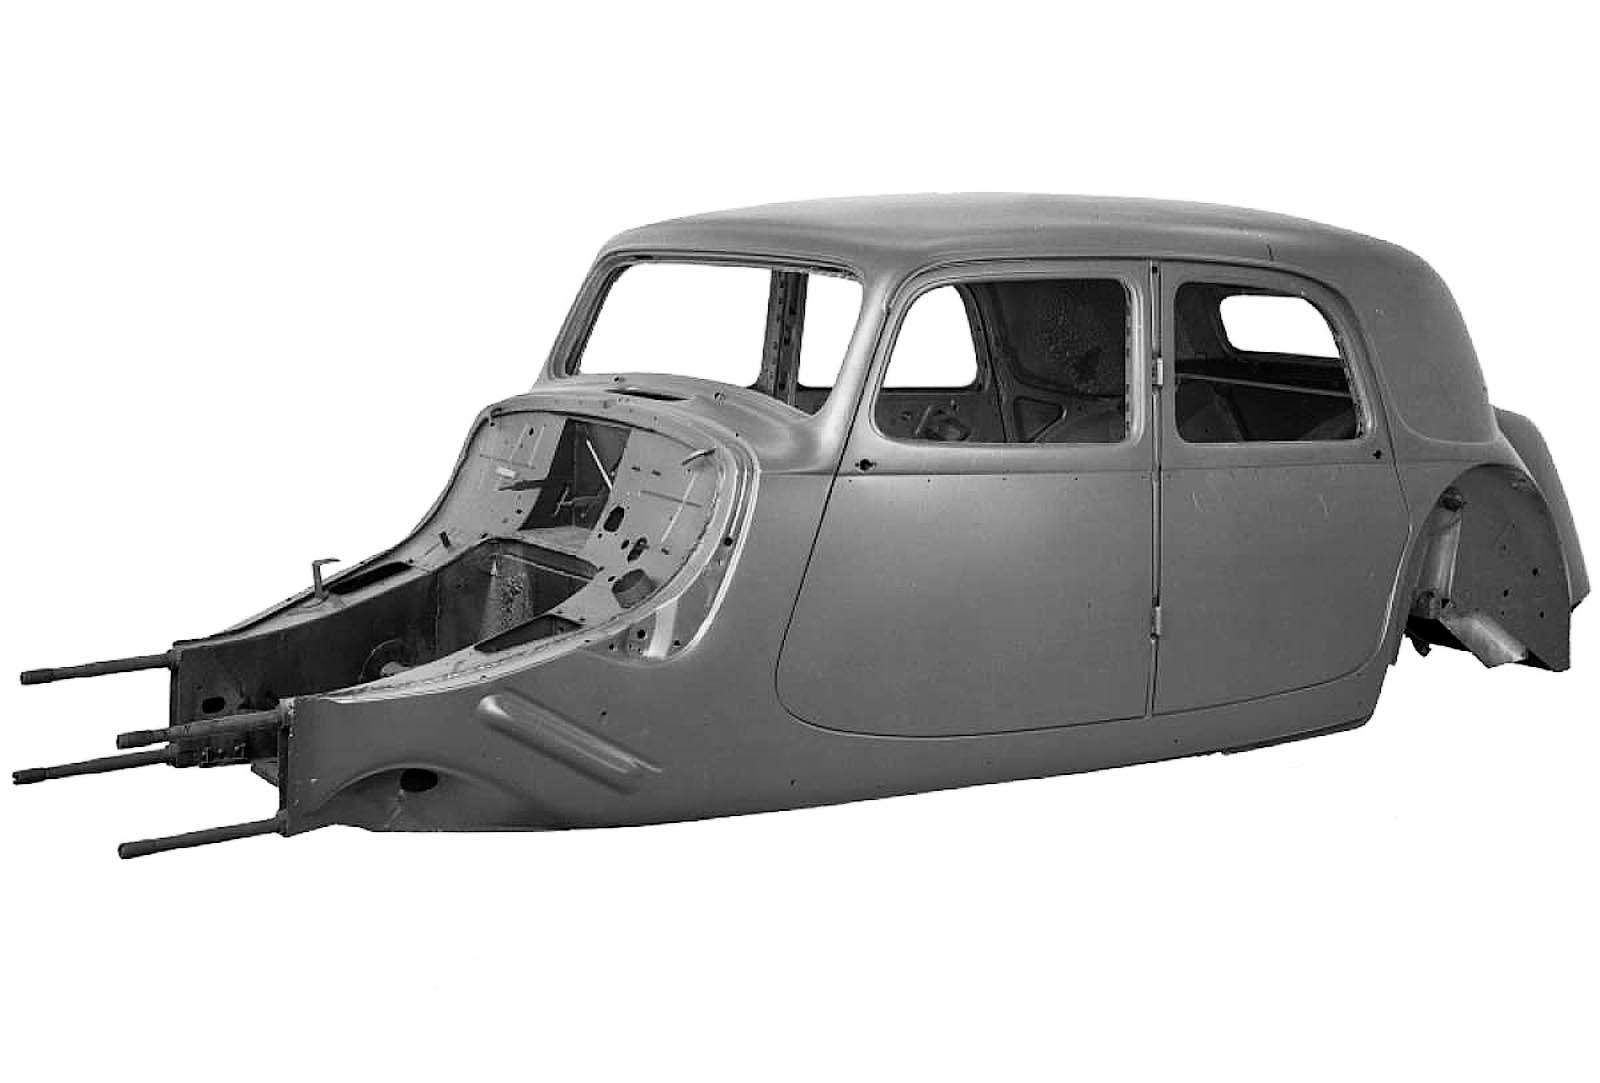 Однако это была скорее развитая пространственная рама. Первым же автомобилем с настоящим несущим кузовом стал передовой Citroen Traction Avant 1934 года